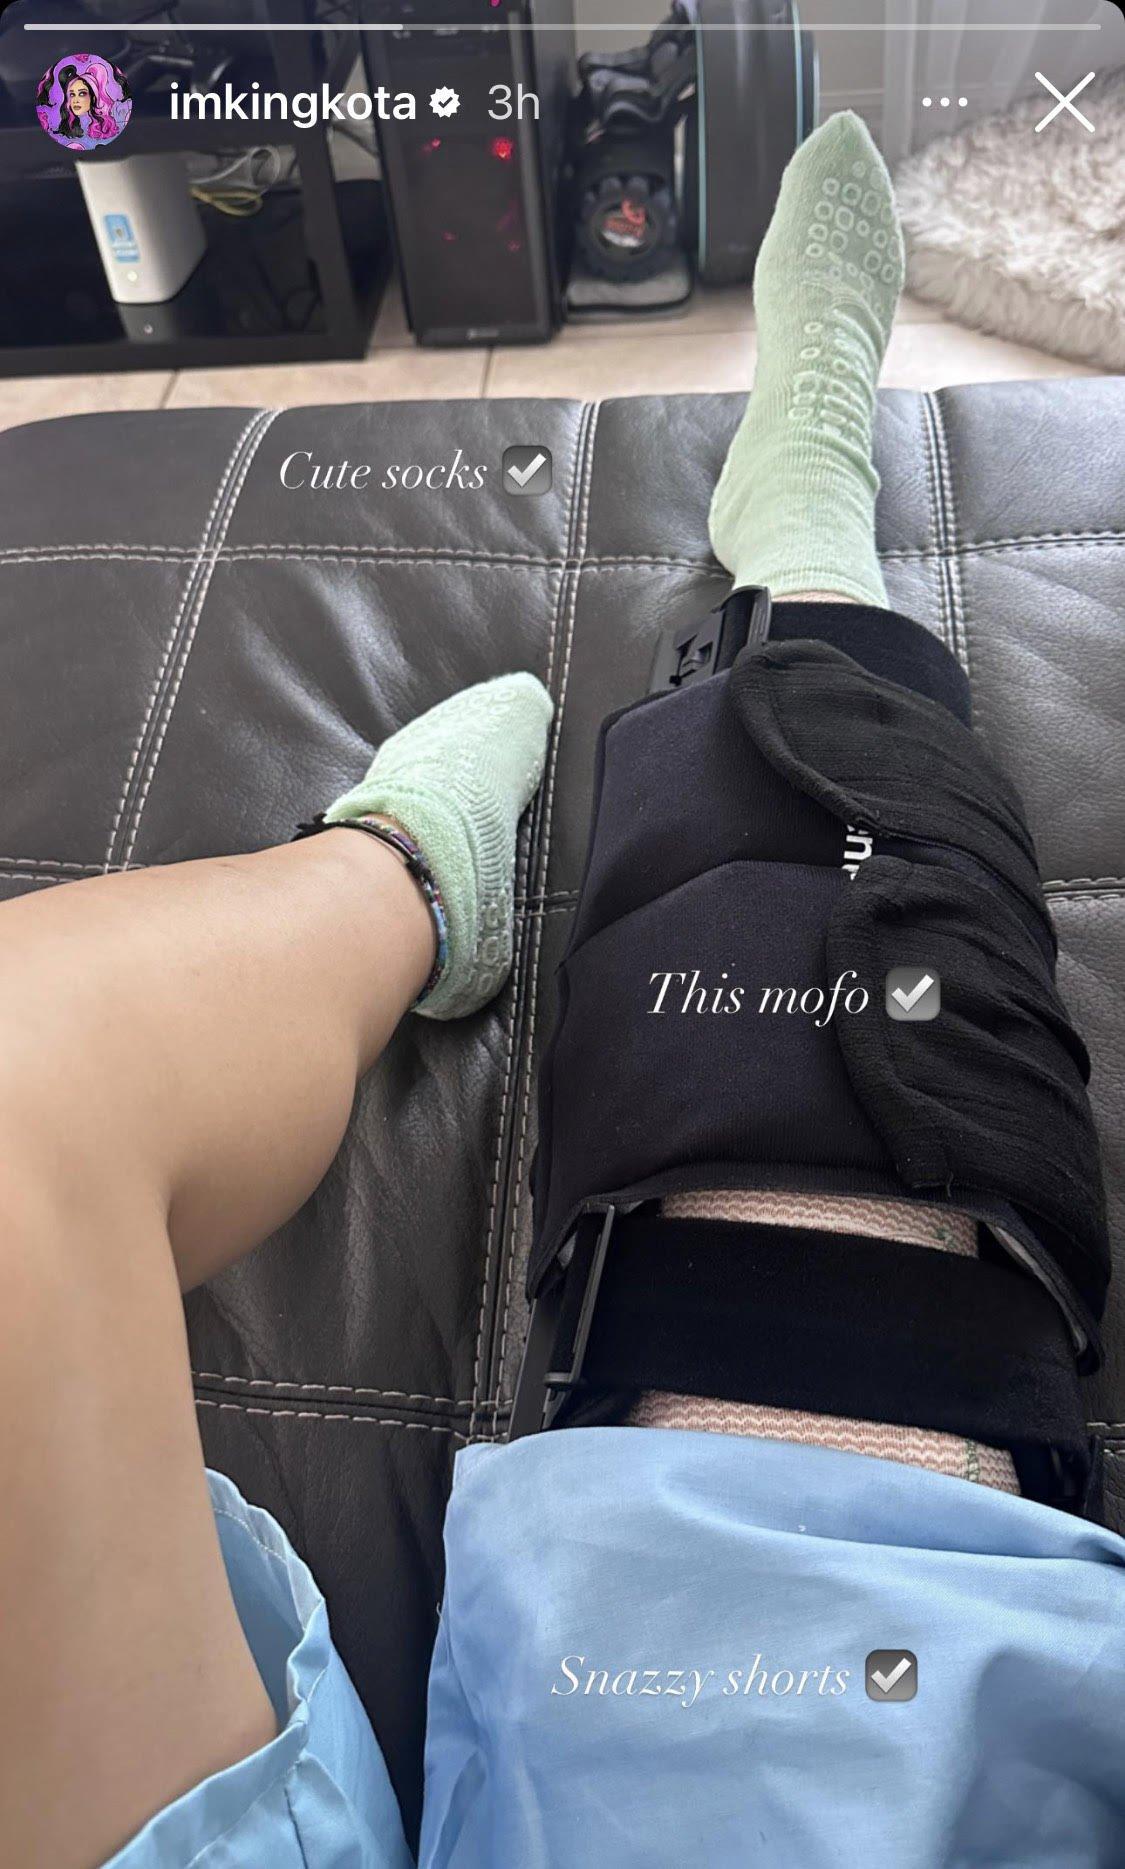 达科塔 (Dakota) 于 2023 年 5 月 23 日在她的 Instagram 故事中分享了一张膝关节前交叉韧带手术后的照片。